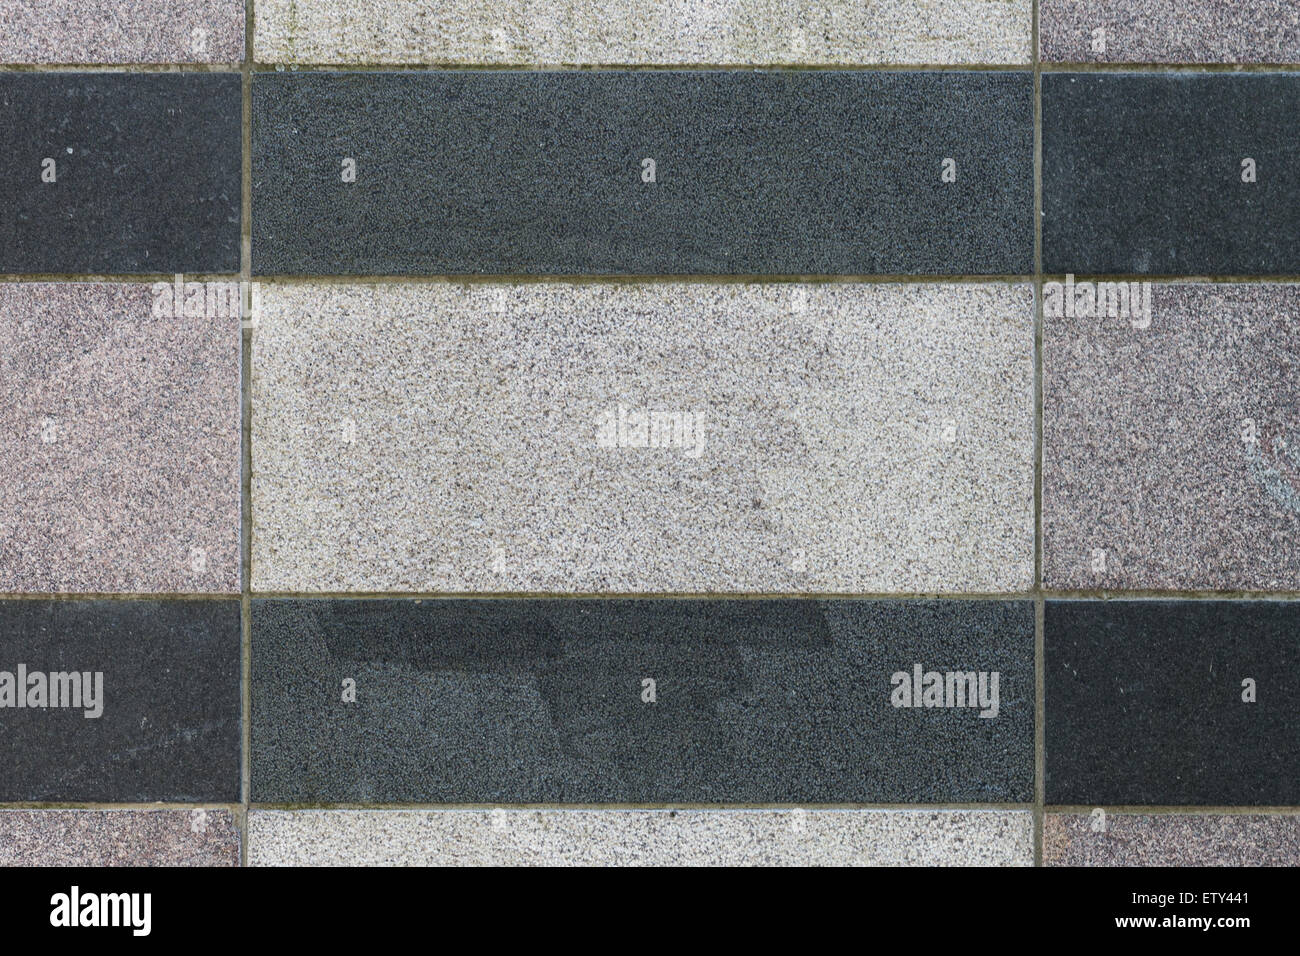 Un mur de pierre gris texturé avec des bandes noires Banque D'Images